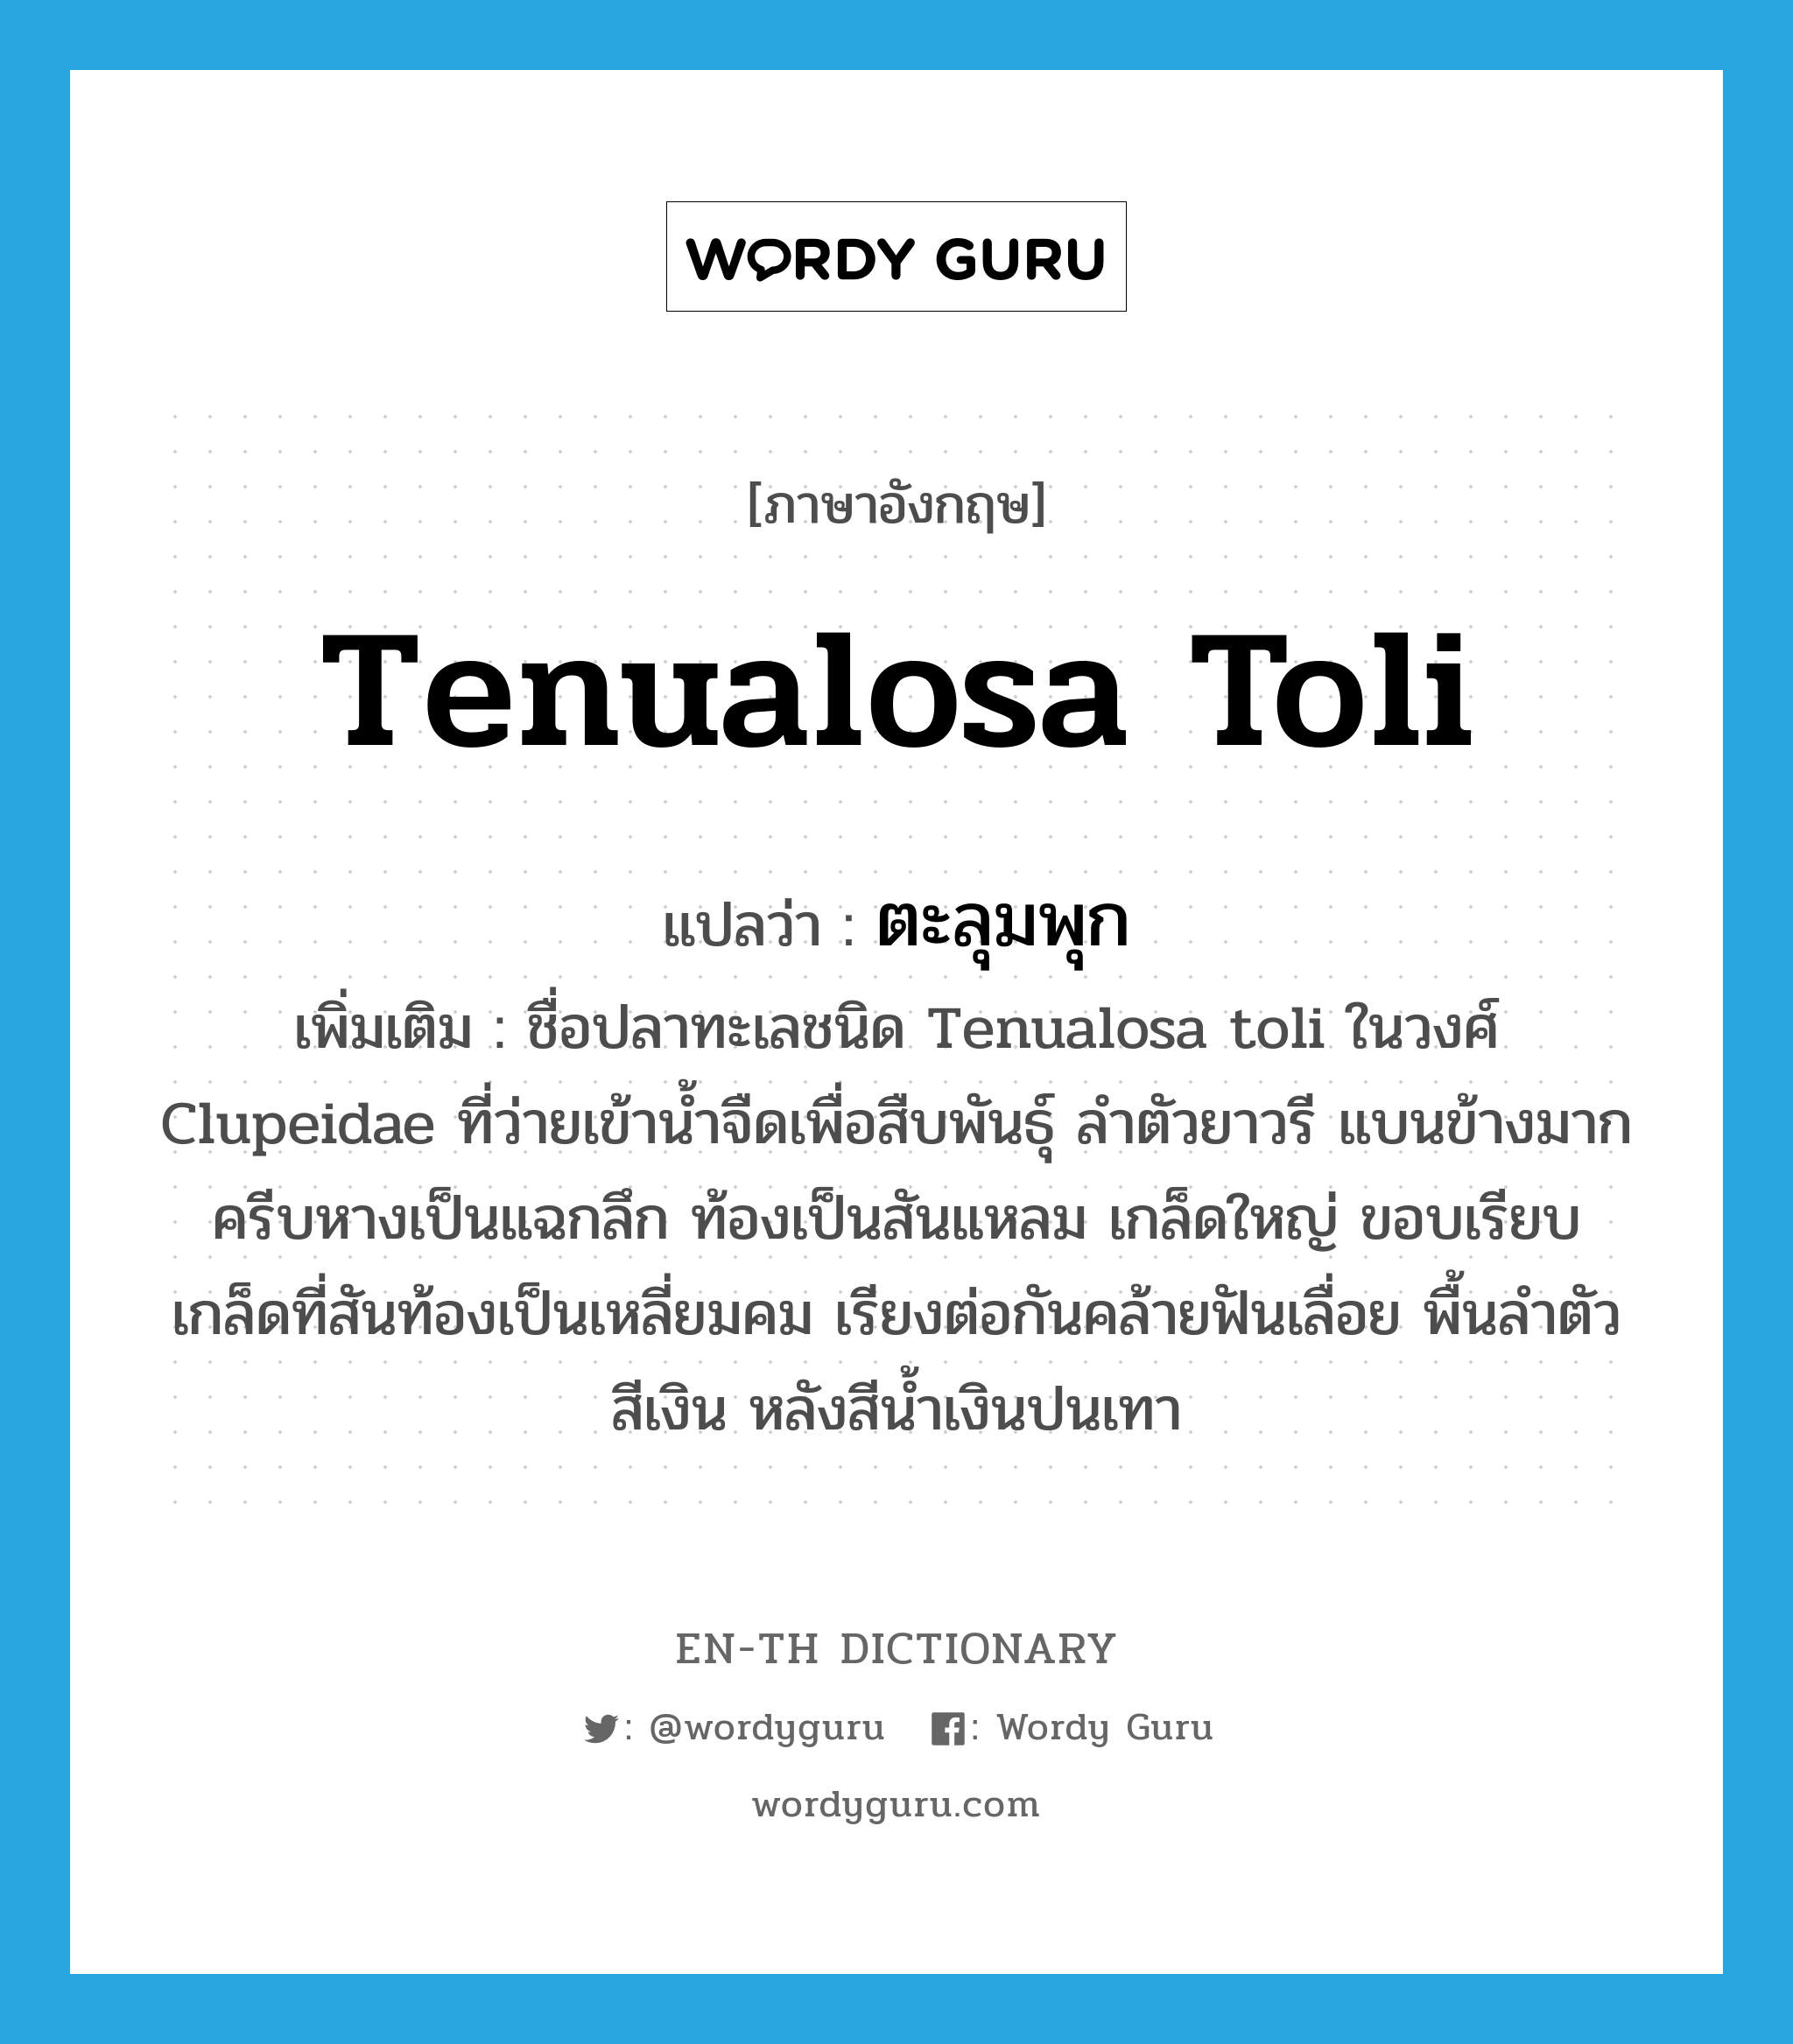 Tenualosa toli แปลว่า?, คำศัพท์ภาษาอังกฤษ Tenualosa toli แปลว่า ตะลุมพุก ประเภท N เพิ่มเติม ชื่อปลาทะเลชนิด Tenualosa toli ในวงศ์ Clupeidae ที่ว่ายเข้าน้ำจืดเพื่อสืบพันธุ์ ลำตัวยาวรี แบนข้างมาก ครีบหางเป็นแฉกลึก ท้องเป็นสันแหลม เกล็ดใหญ่ ขอบเรียบ เกล็ดที่สันท้องเป็นเหลี่ยมคม เรียงต่อกันคล้ายฟันเลื่อย พื้นลำตัวสีเงิน หลังสีน้ำเงินปนเทา หมวด N